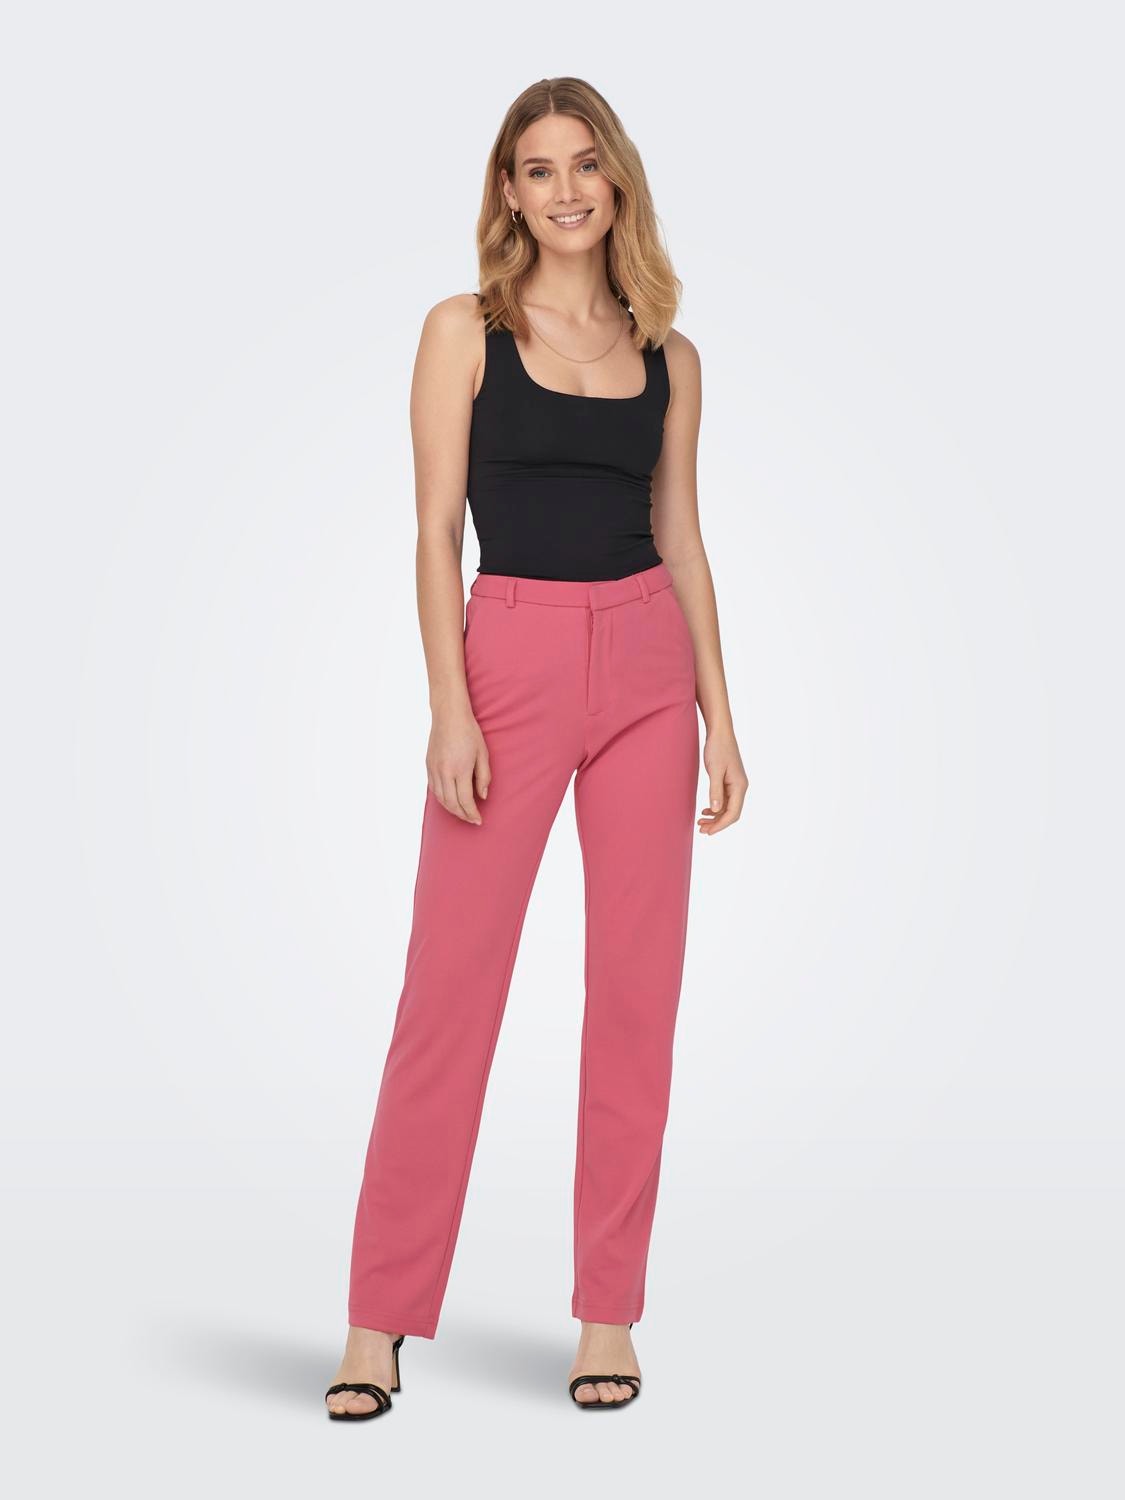 Buy DIAZ Women's Regular Fit Plain 3/4th Capri Pants (Purple, Baby Pink,M)  at